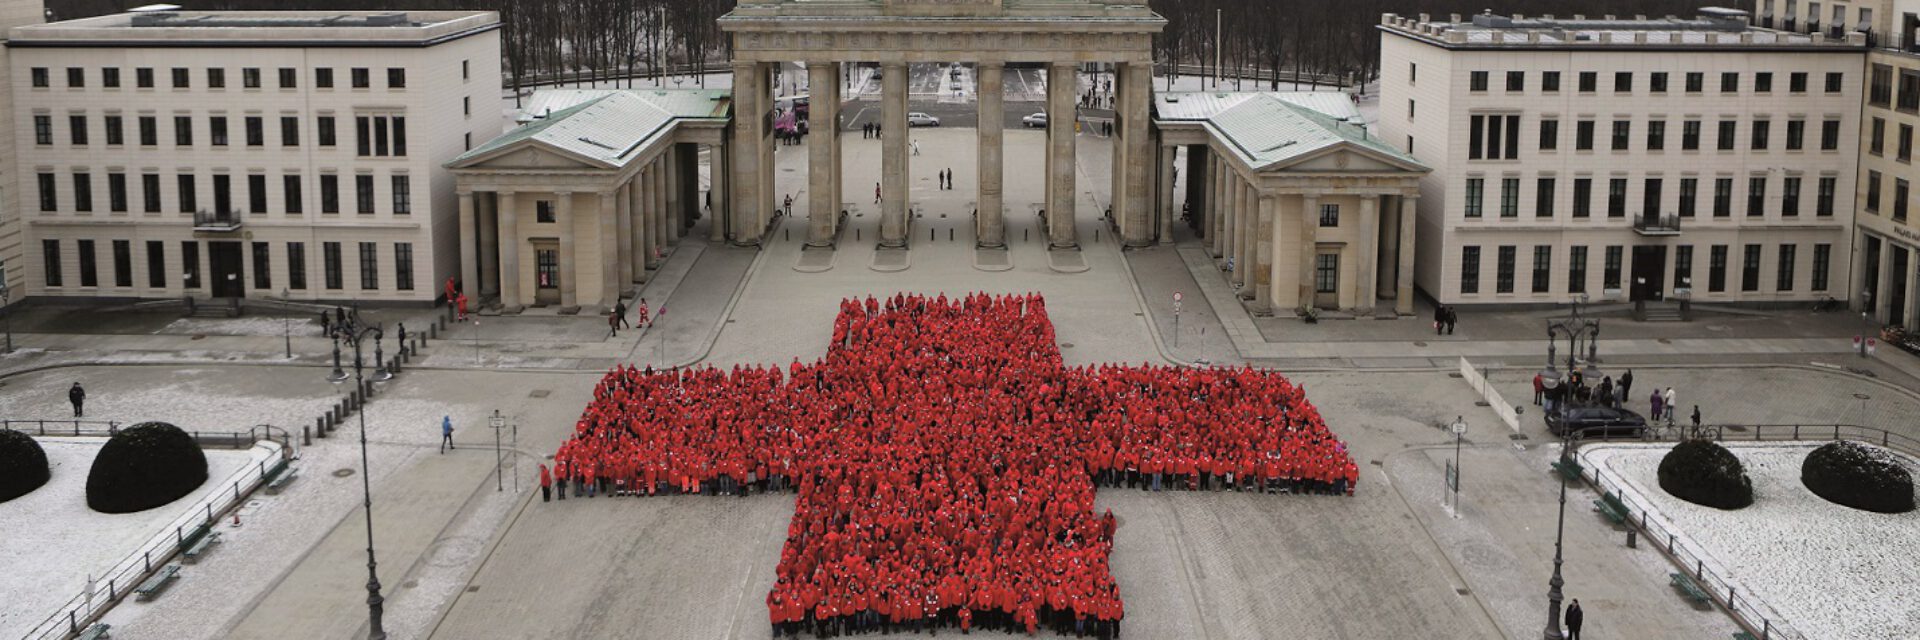 Menschenansammlung am Brandenburger Tor, welche ein rotes Kreuz abbilden